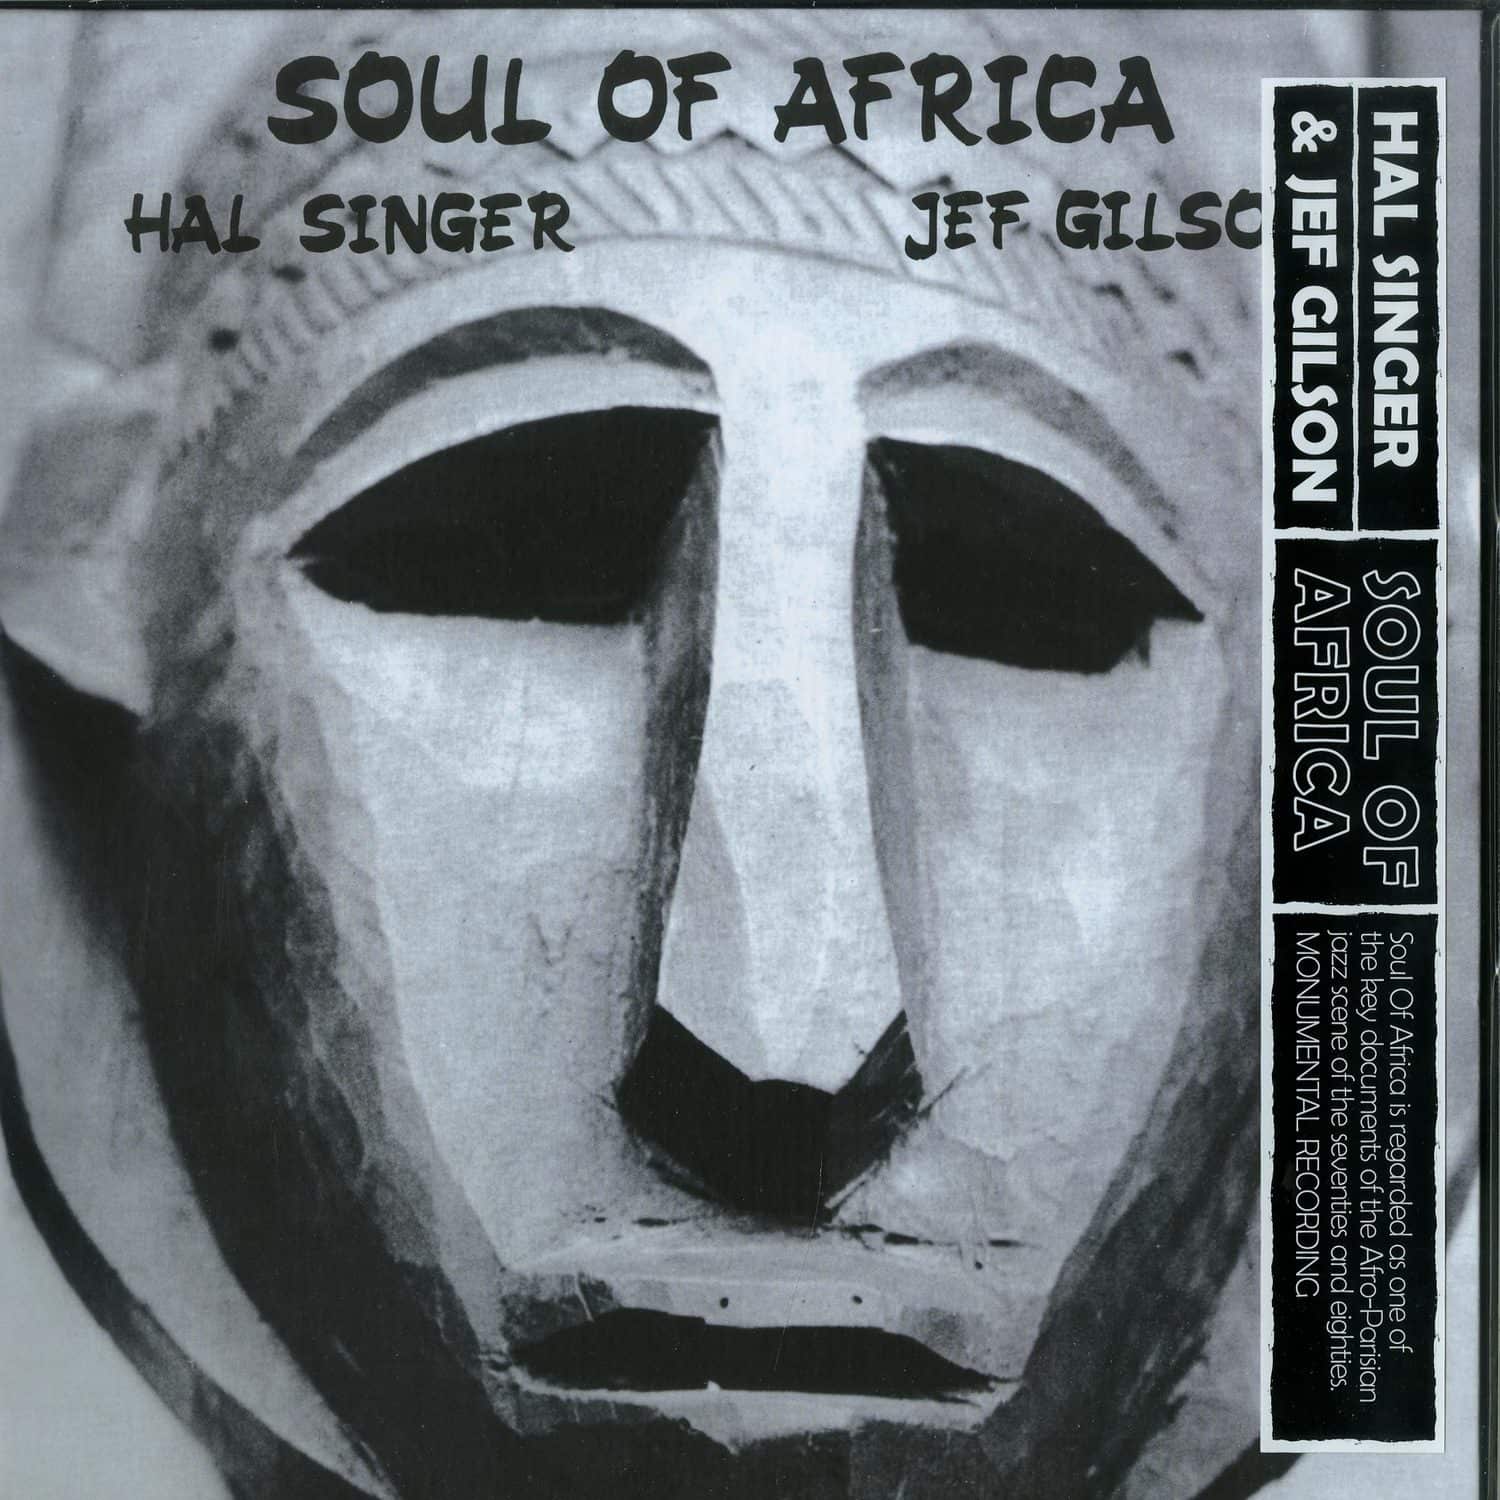 Hal Singer & Jef Gilson - SOUL OF AFRICA 